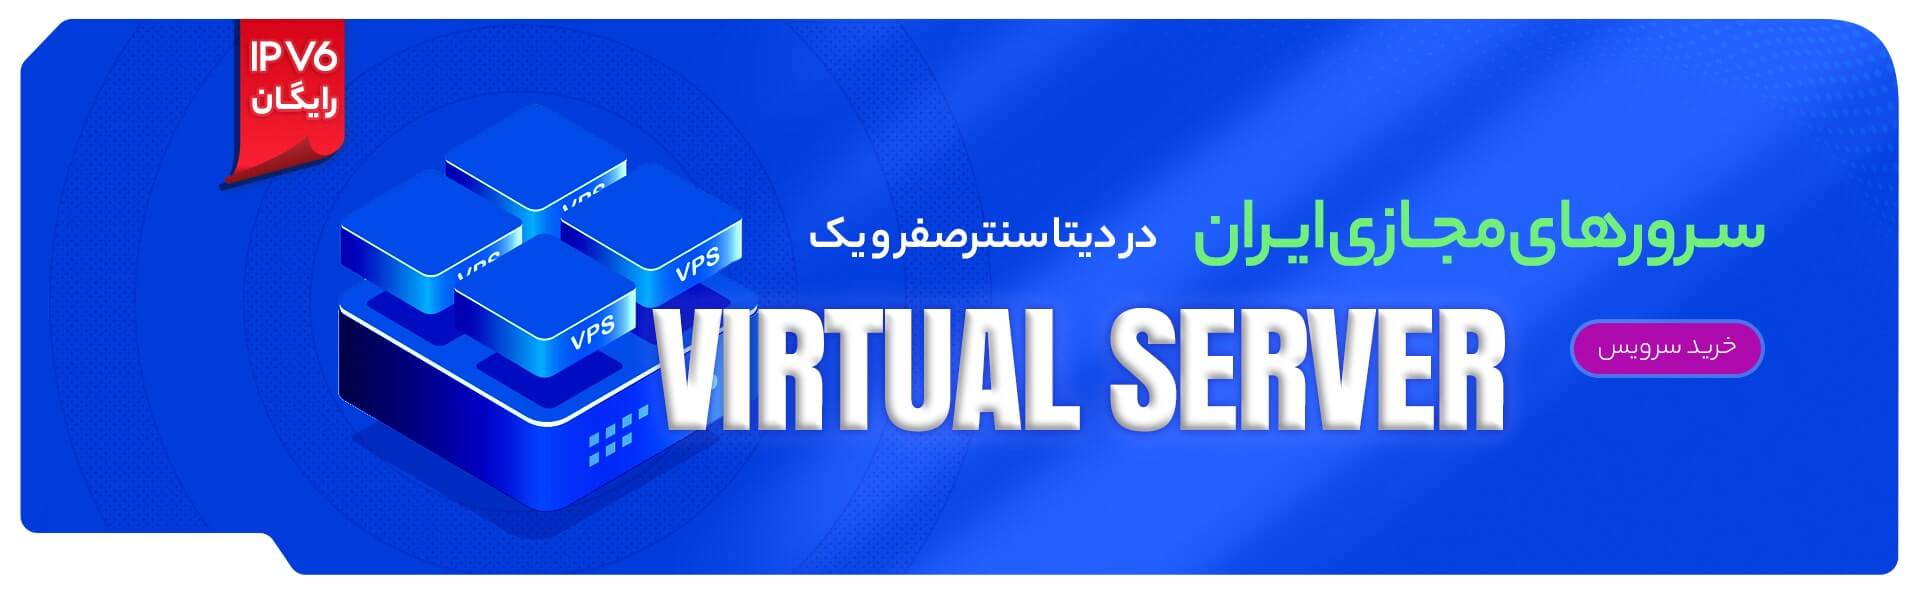 بهترین سرور مجازی  ایران